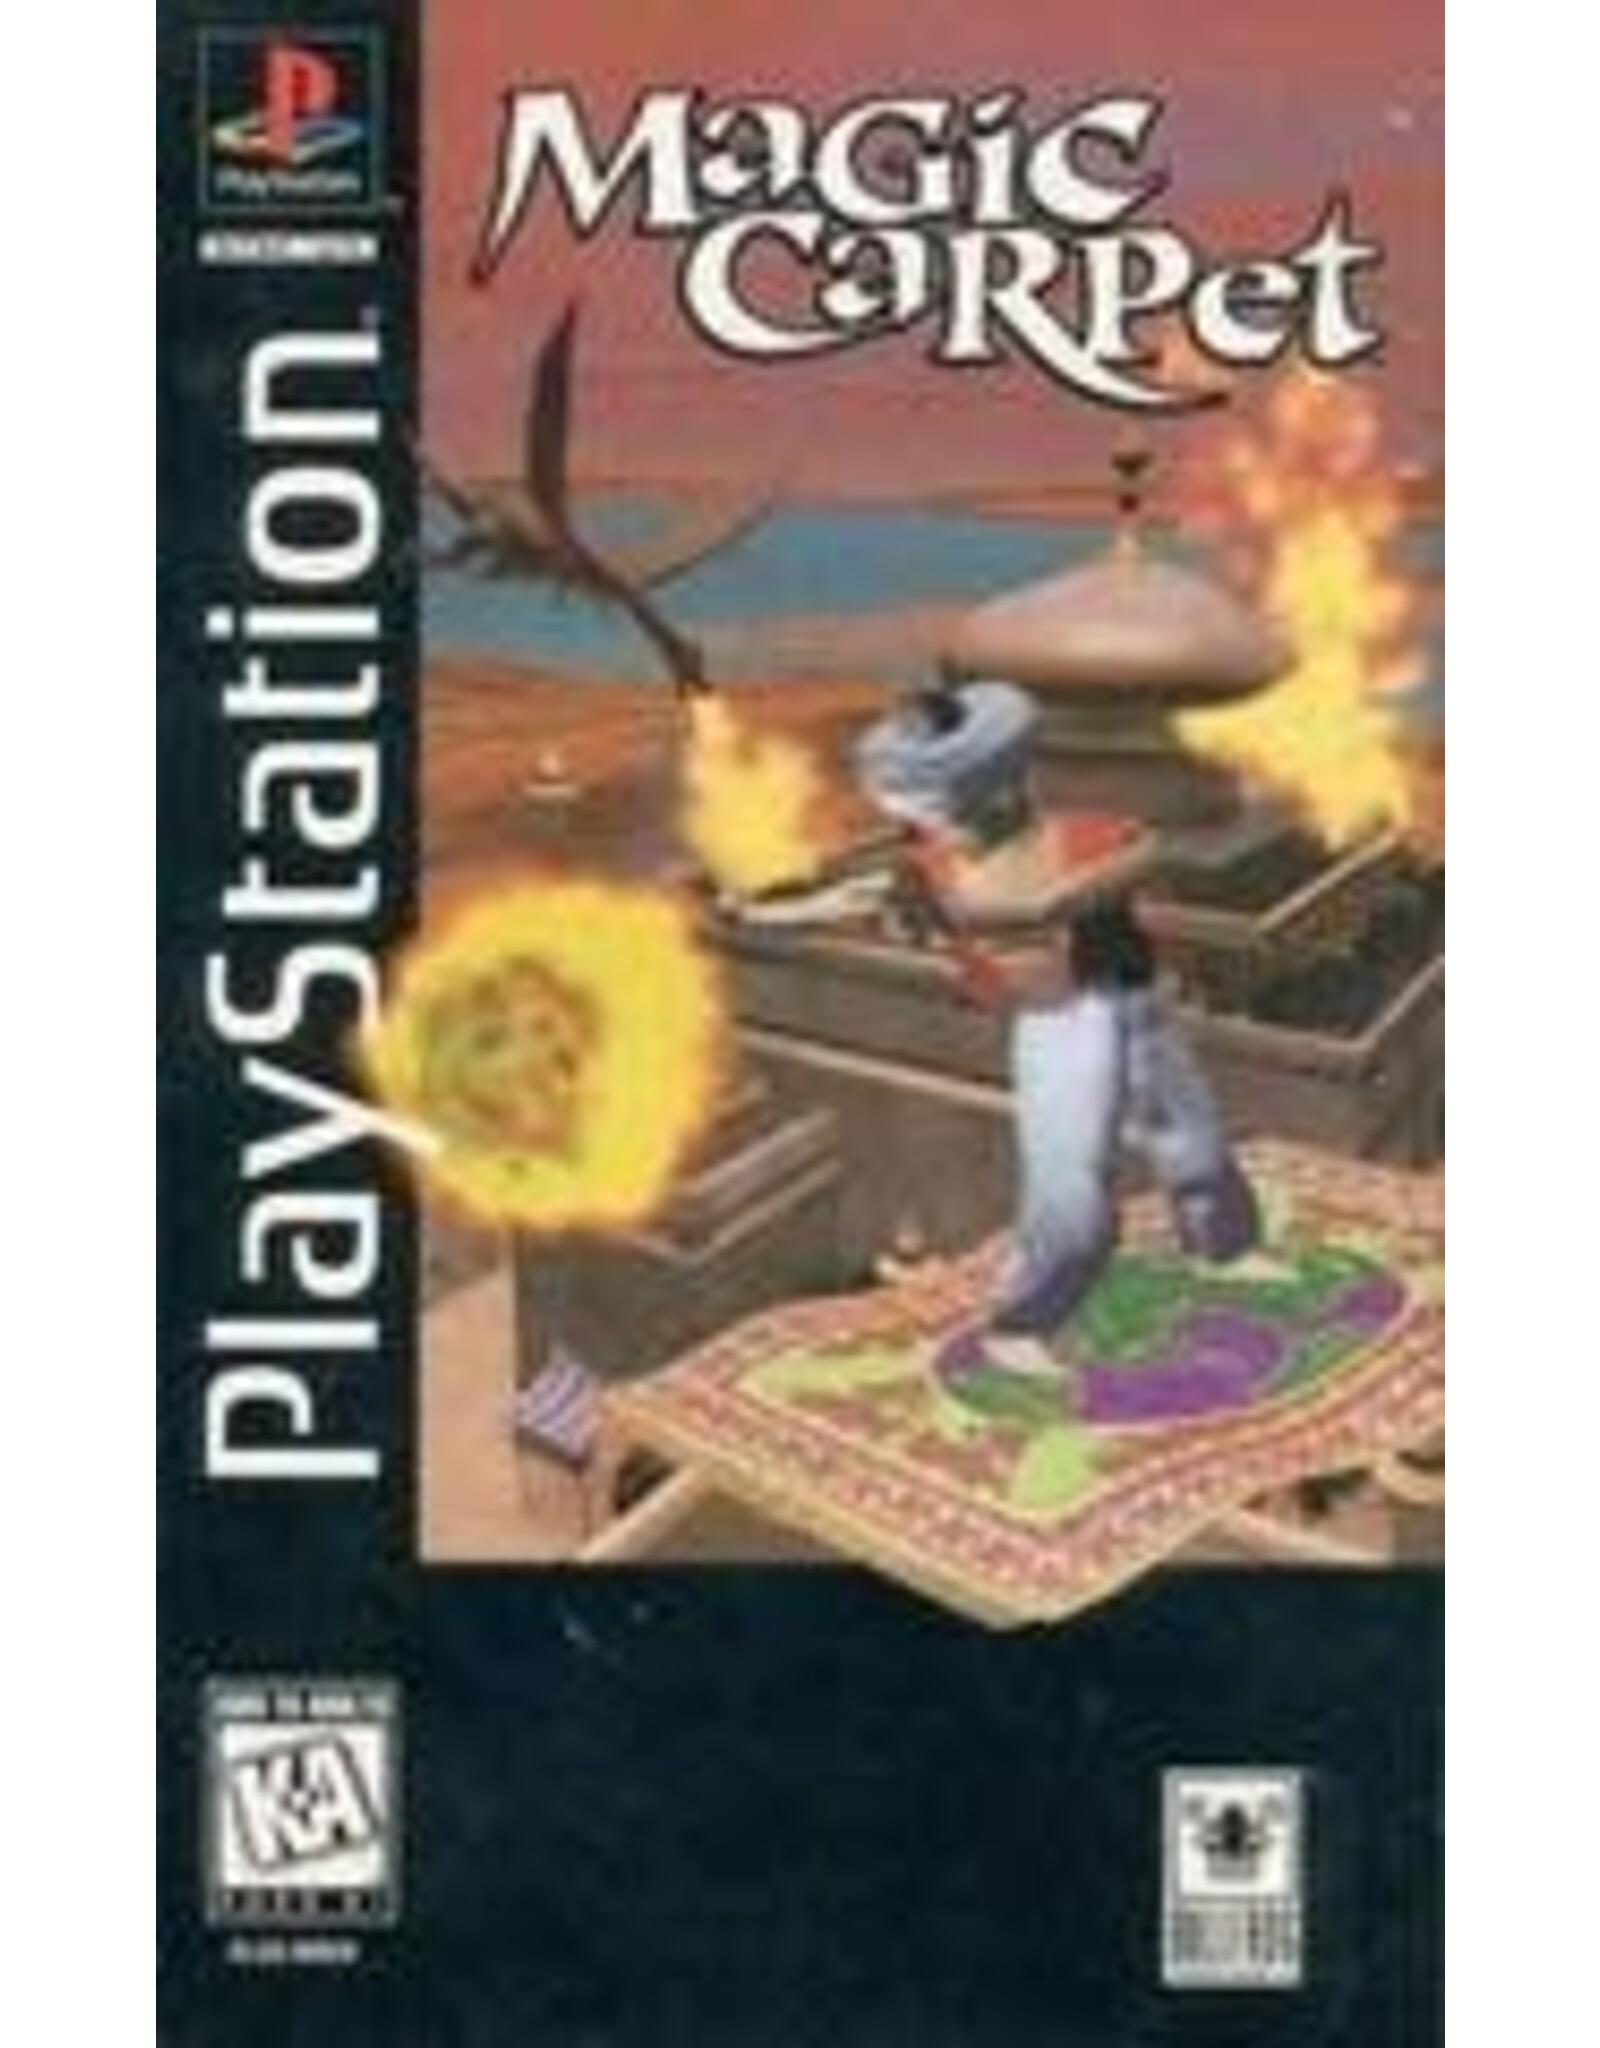 Playstation Magic Carpet (CiB, Long Box, Minor Damage)